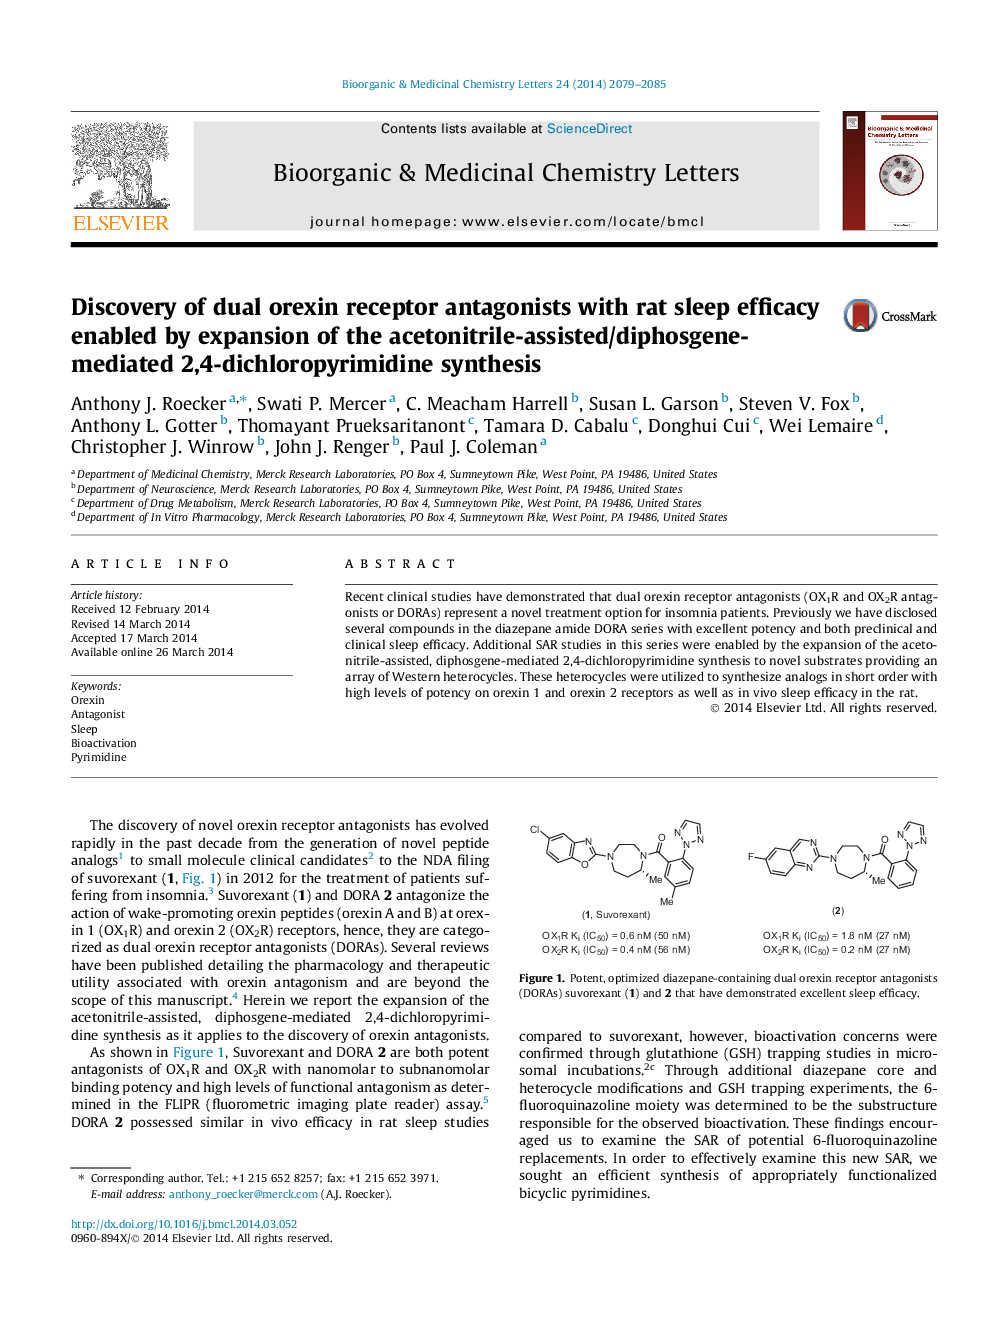 کشف دوتا از آنتاگونیست های گیرنده اکسین با اثربخشی خواب موش توسط گسترش سنتز 2،4-دی هلوپریریمیدین با استفاده از استونیتریل / متفرقه 